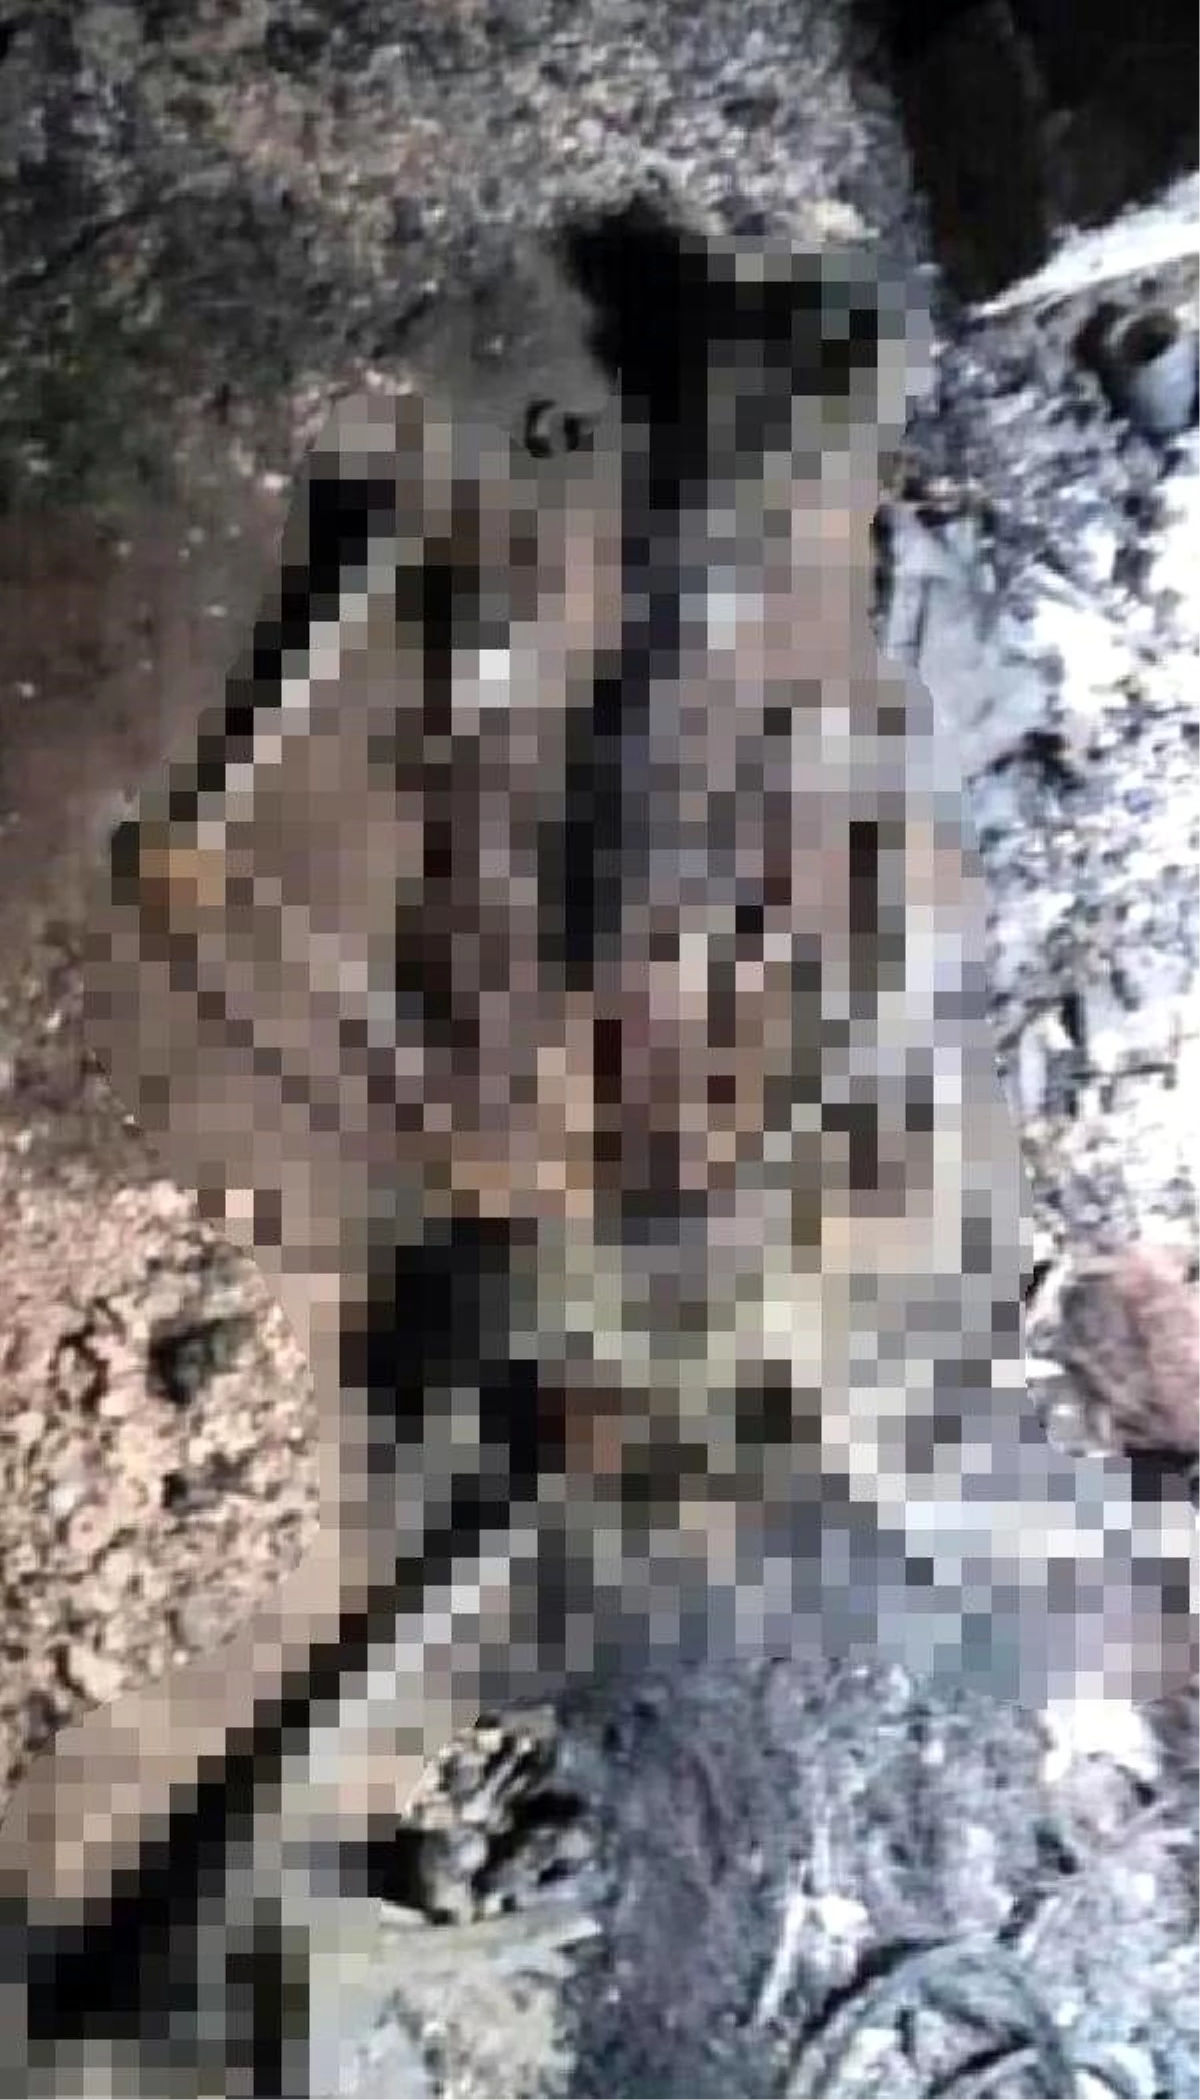 Son dakika haber | Darbeci Hafter milisleri tarafından öldürülen pasaport memurunun kemikleri bulundu